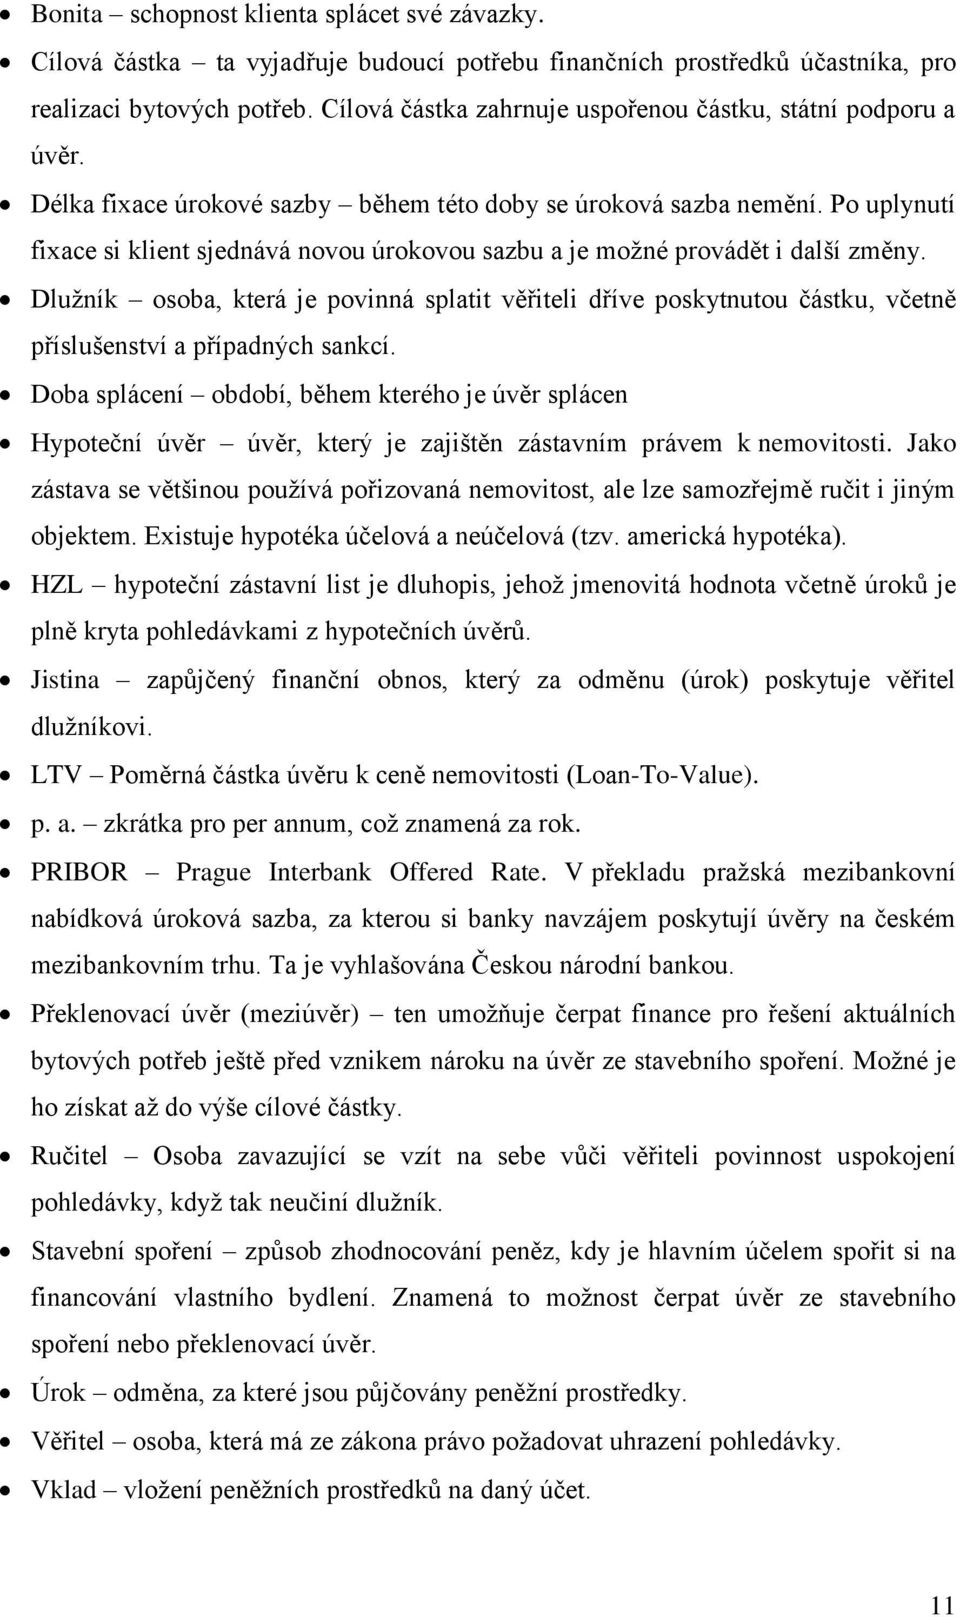 VYSOKÁ ŠKOLA POLYTECHNICKÁ JIHLAVA - PDF Stažení zdarma